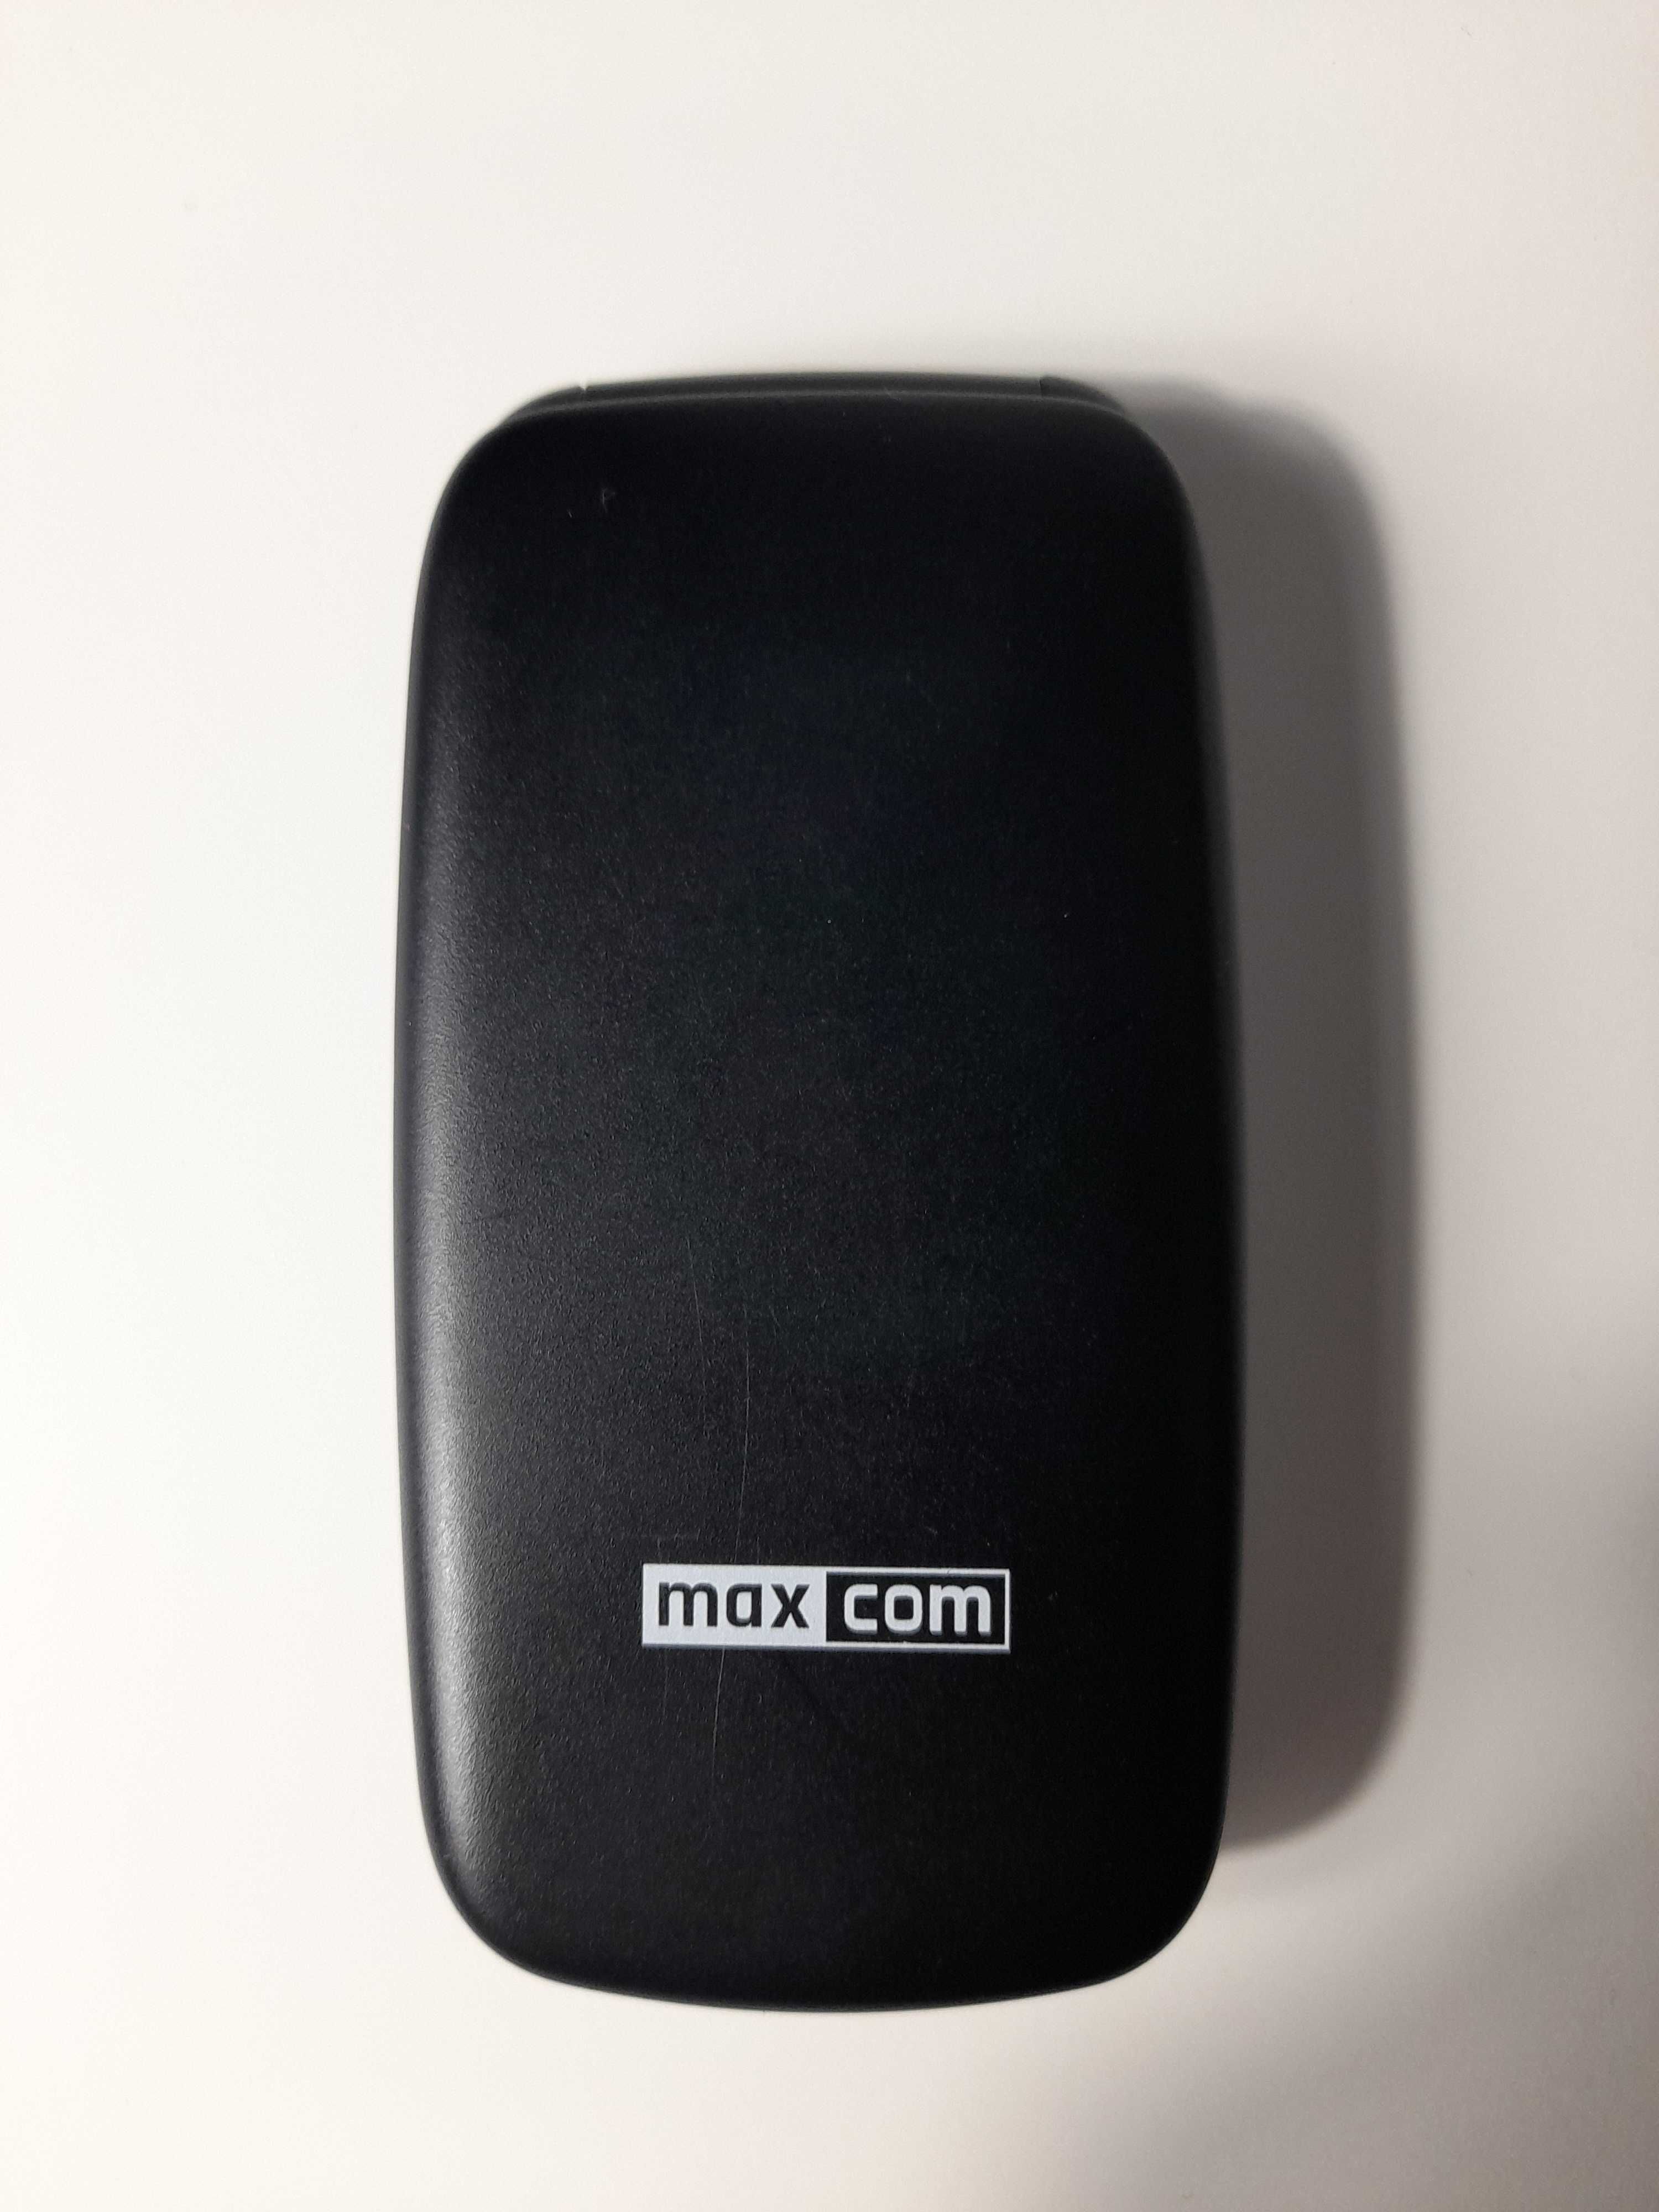 Telefon Maxcom comfort MM817 z klapką dla seniora wysyłka